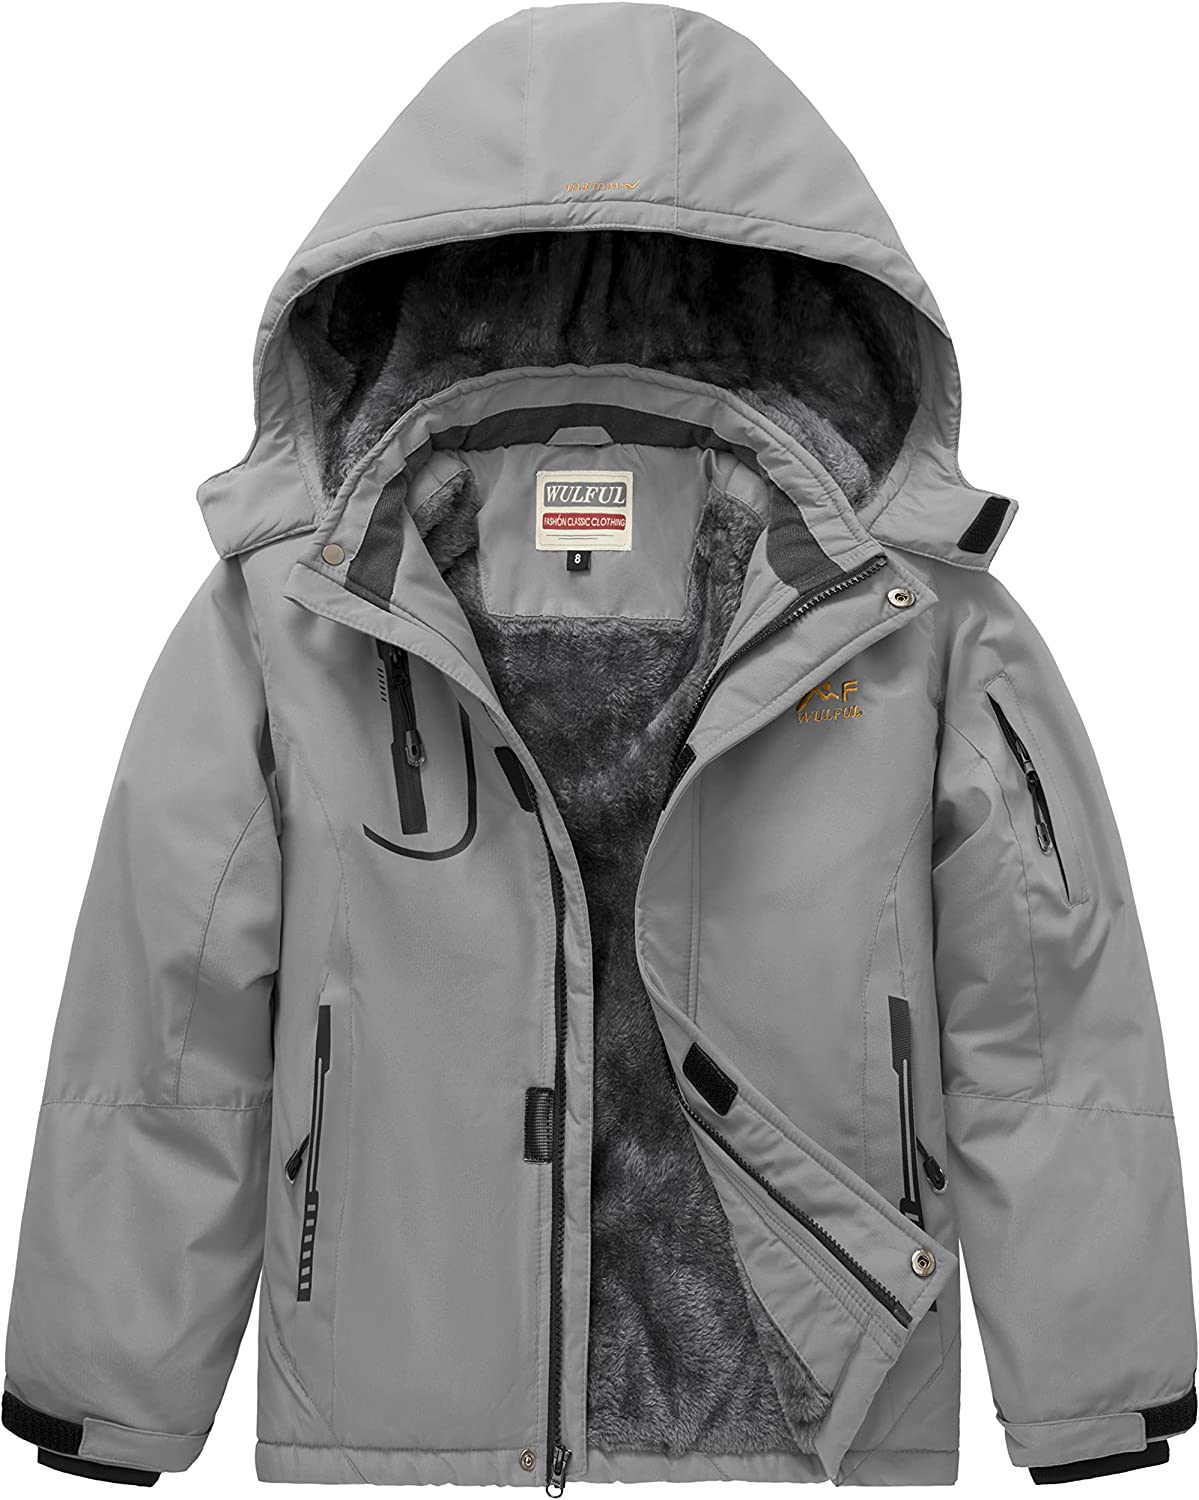 WULFUL Boy's Waterproof Ski Jacket Warm Fleece Hooded Windproof Winter Snow Coat 